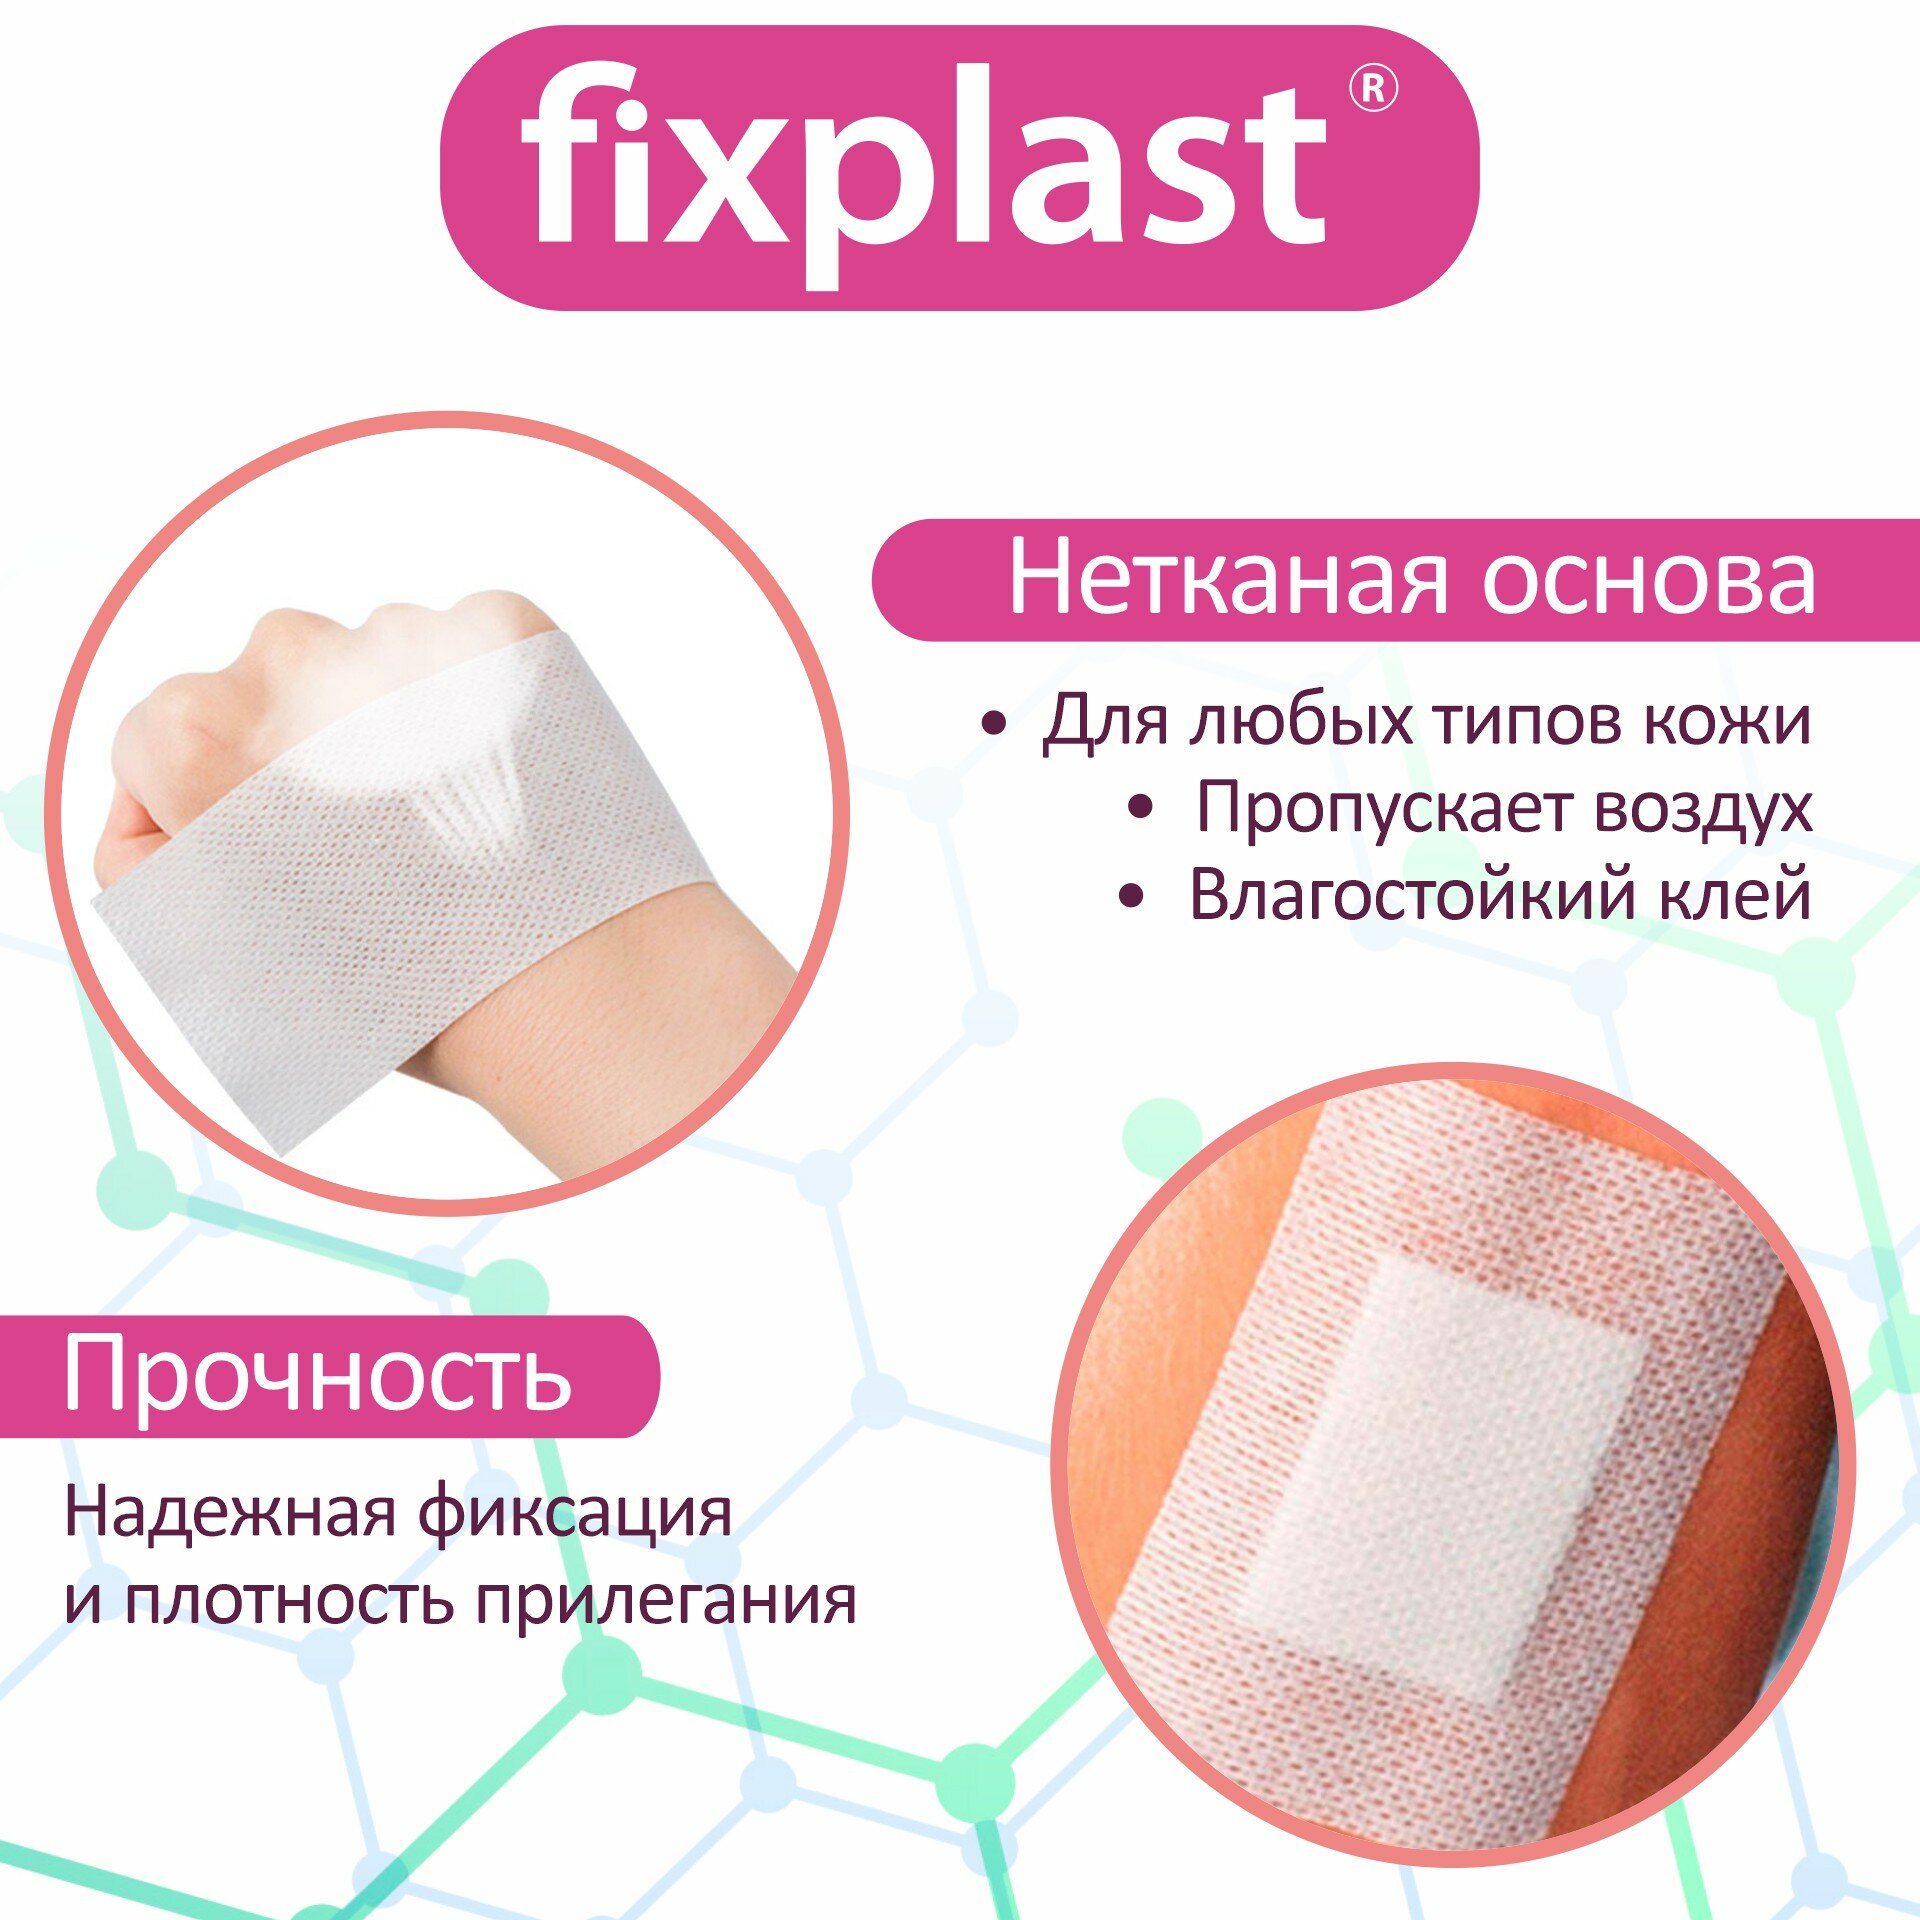 Пластырь-повязка 20*10 см, медицинская стерильная на рану и шов, 10 штук Fixplast с сорбционной подушечкой